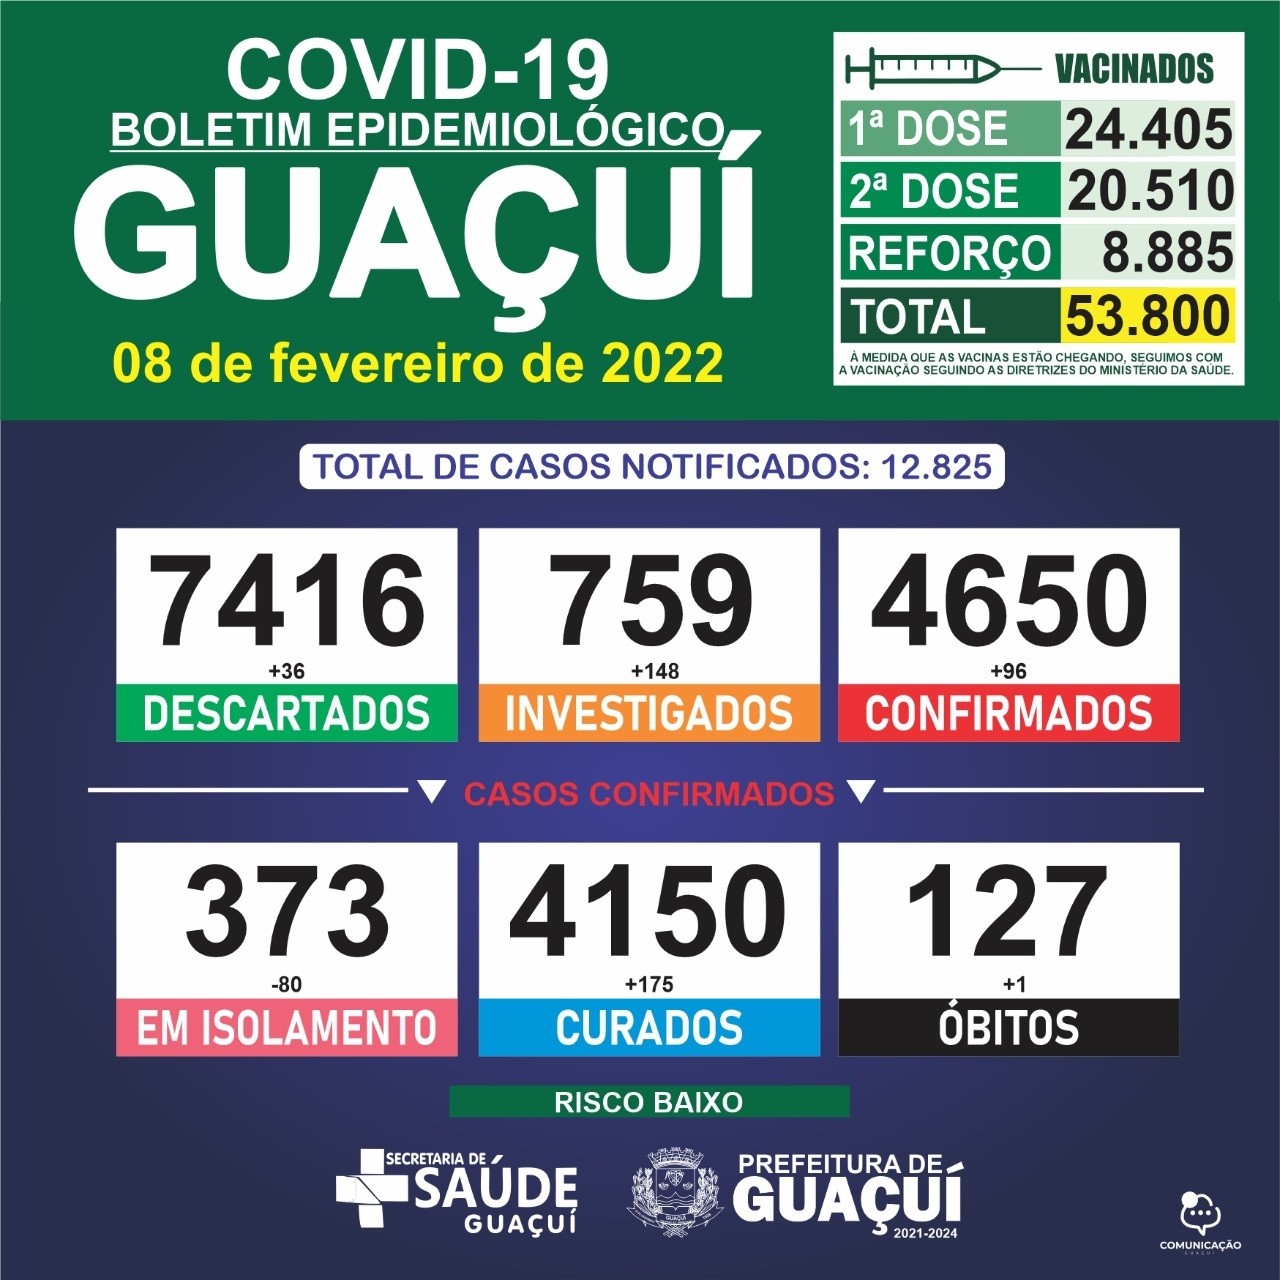 Boletim Epidemiológico 08/02/2022: Guaçuí registra 01 óbito, 96 casos confirmados e 175 curados